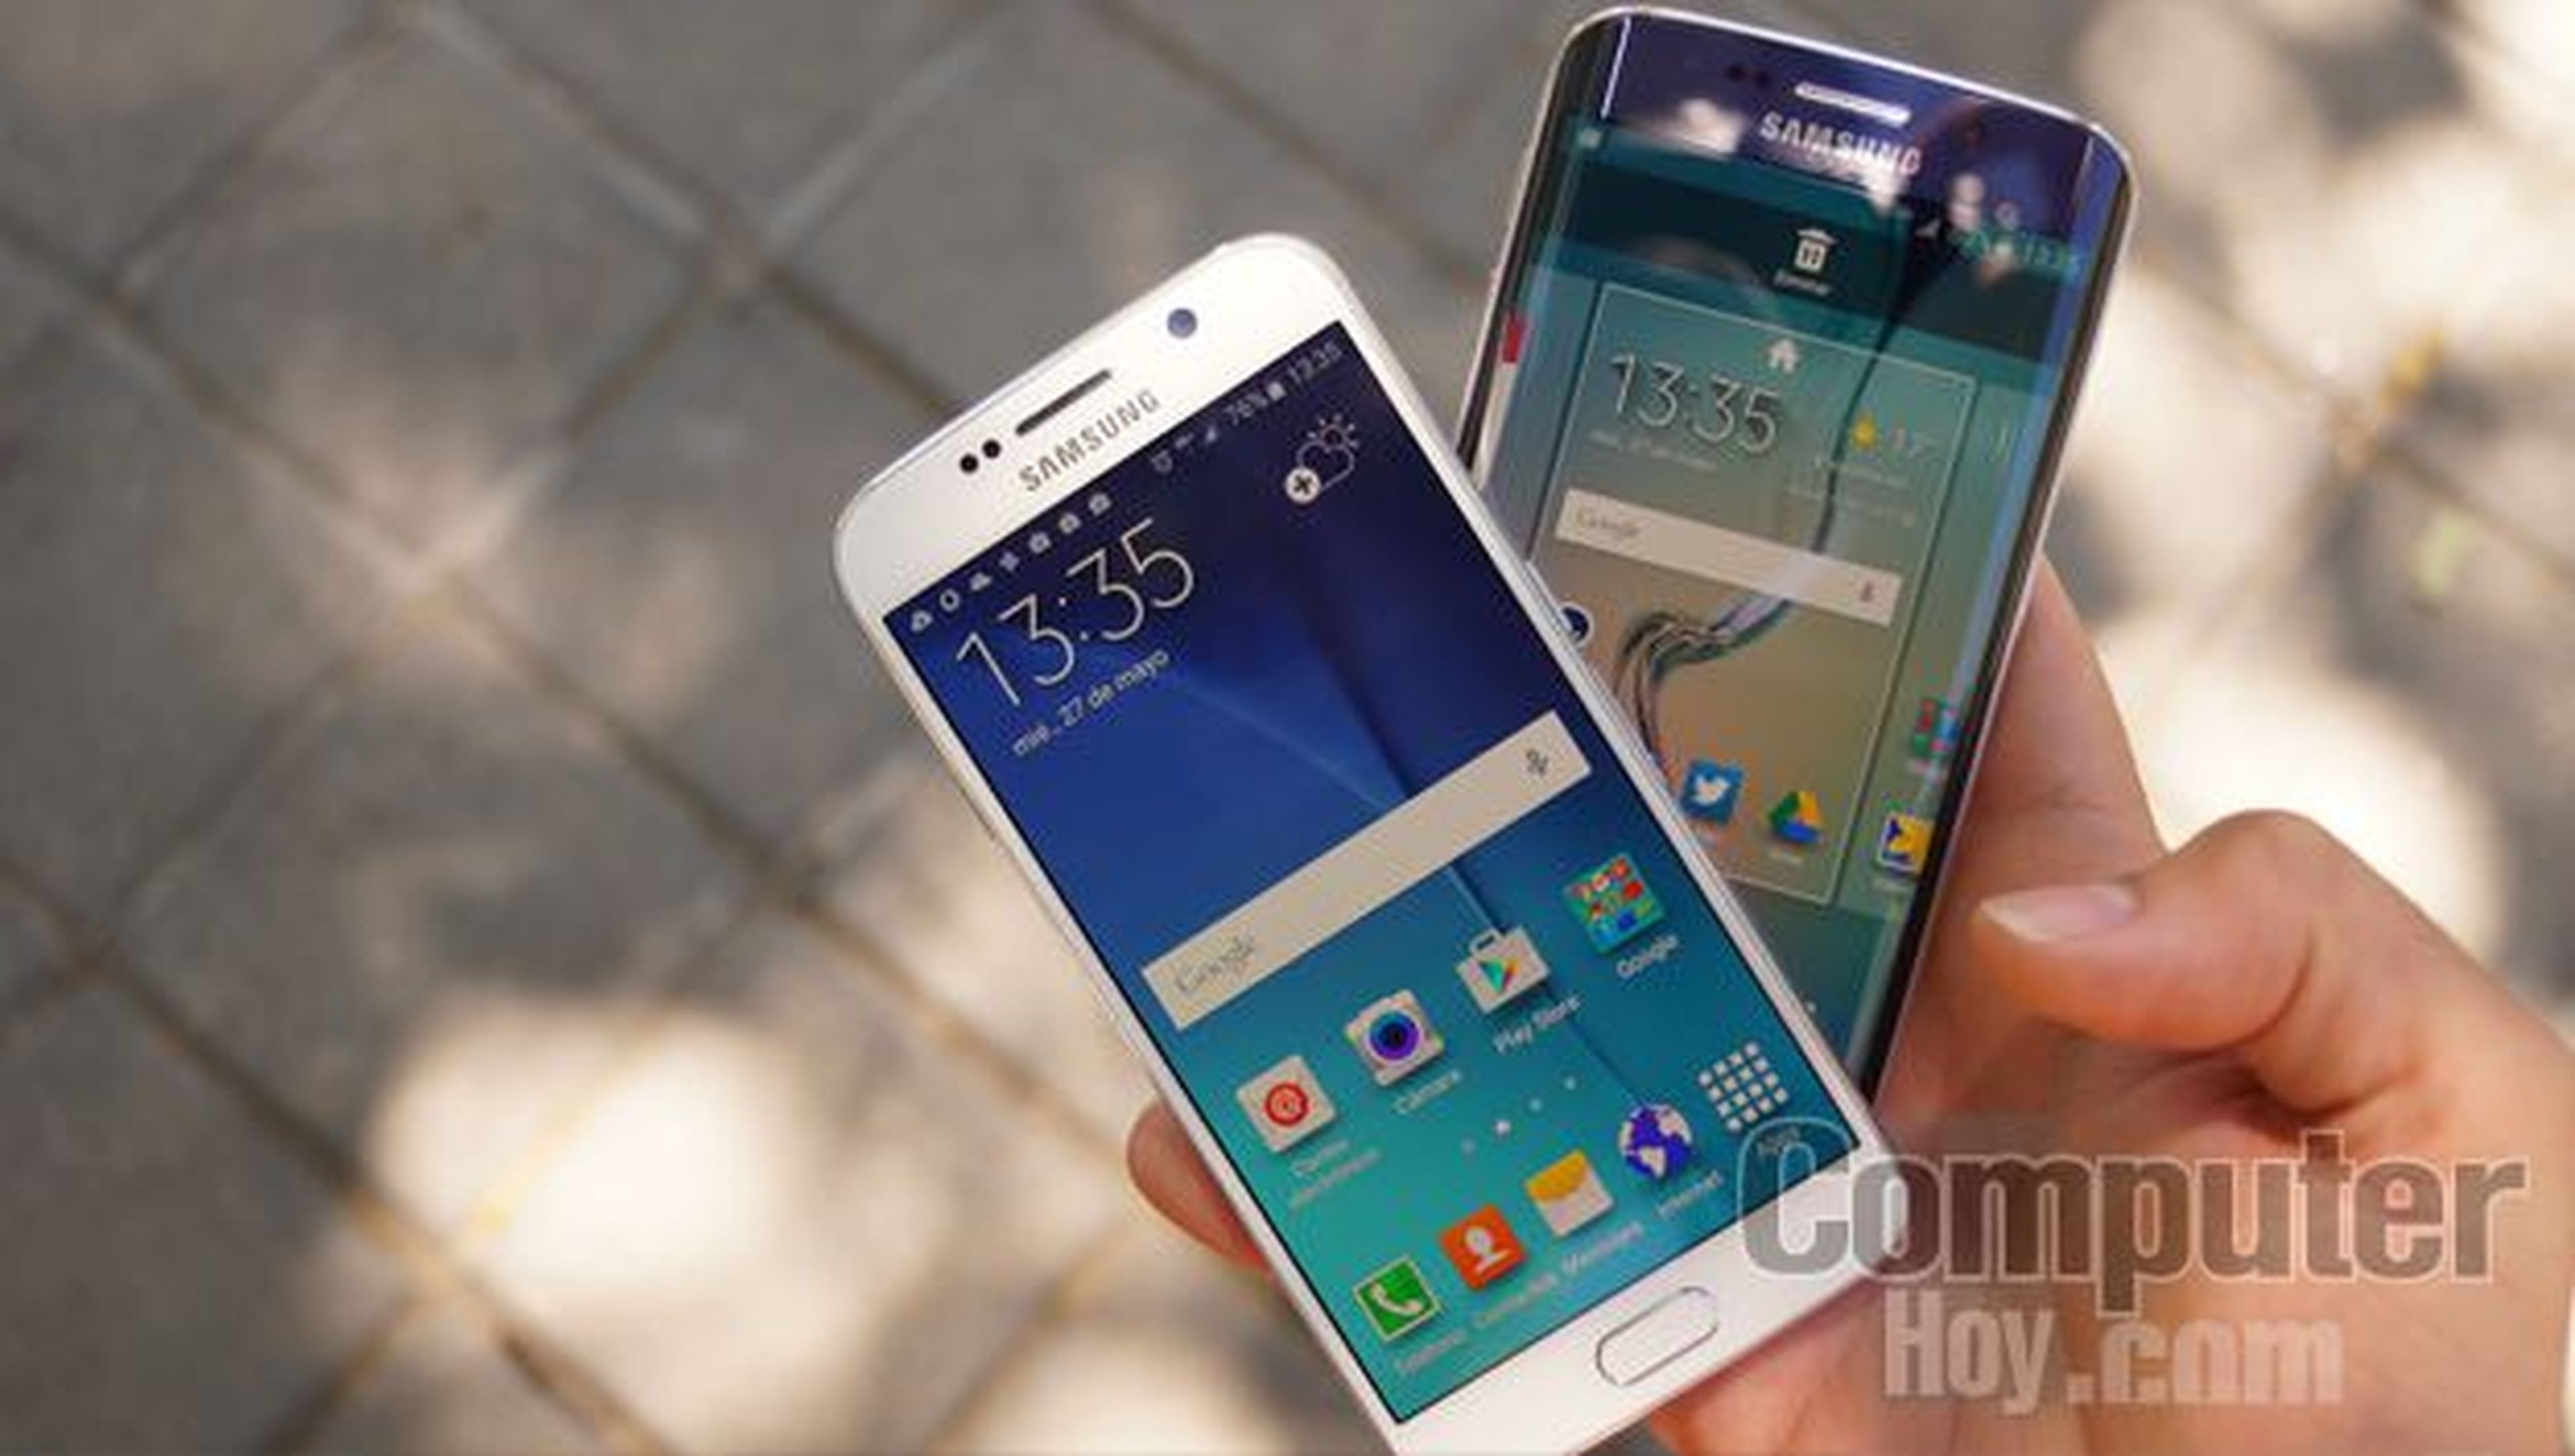 Samsung Galaxy S6 comparacion en mano